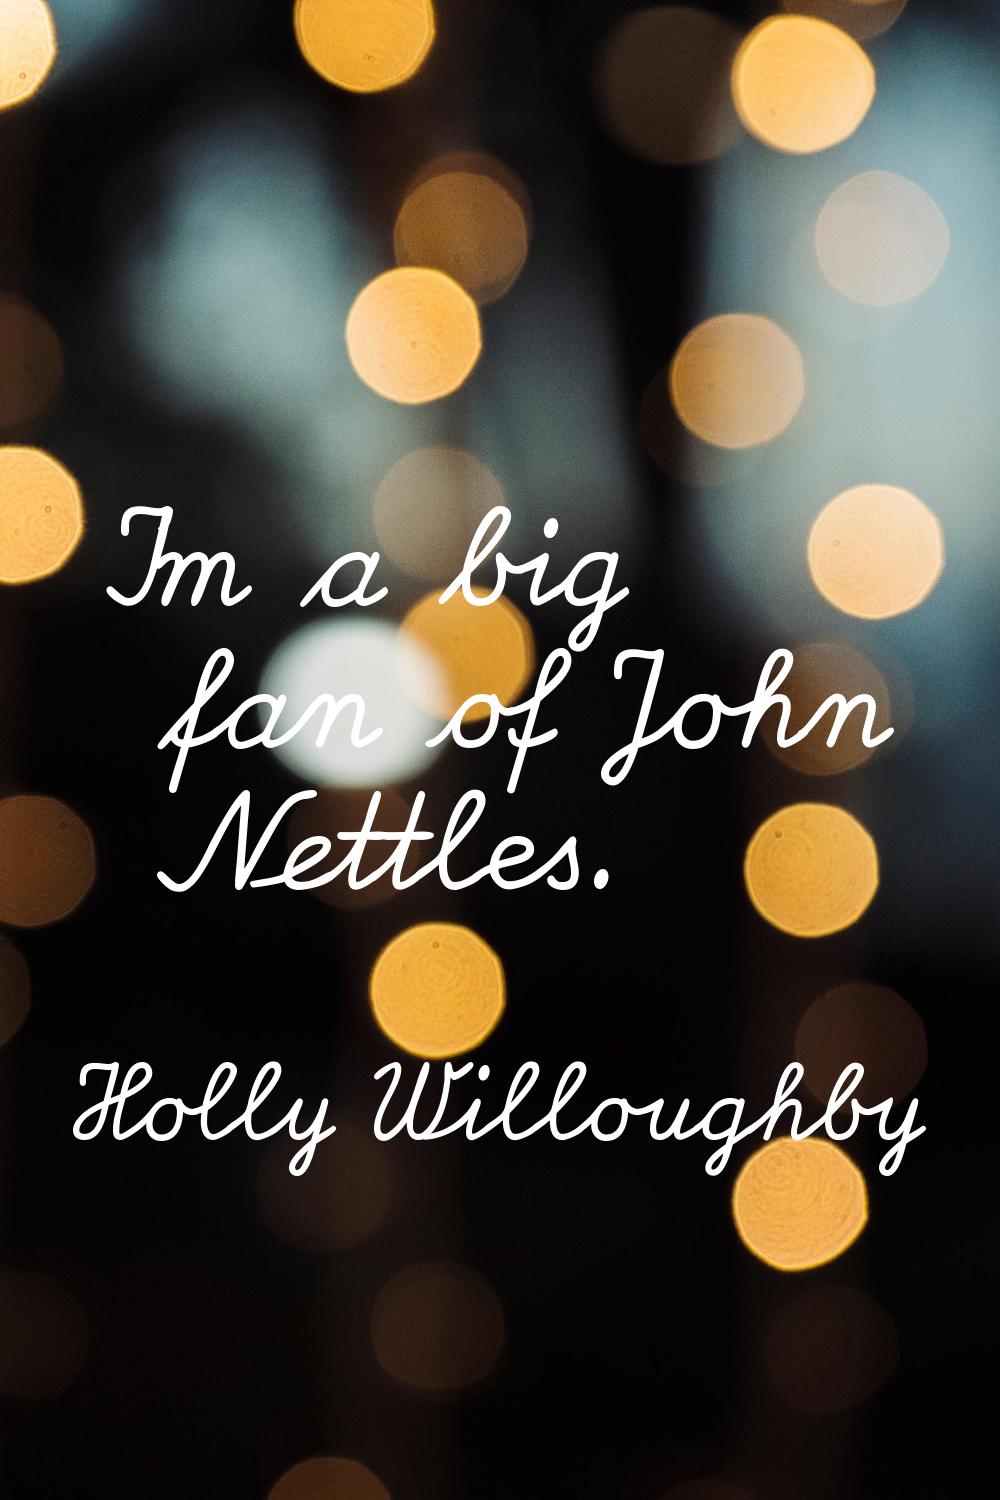 I'm a big fan of John Nettles.